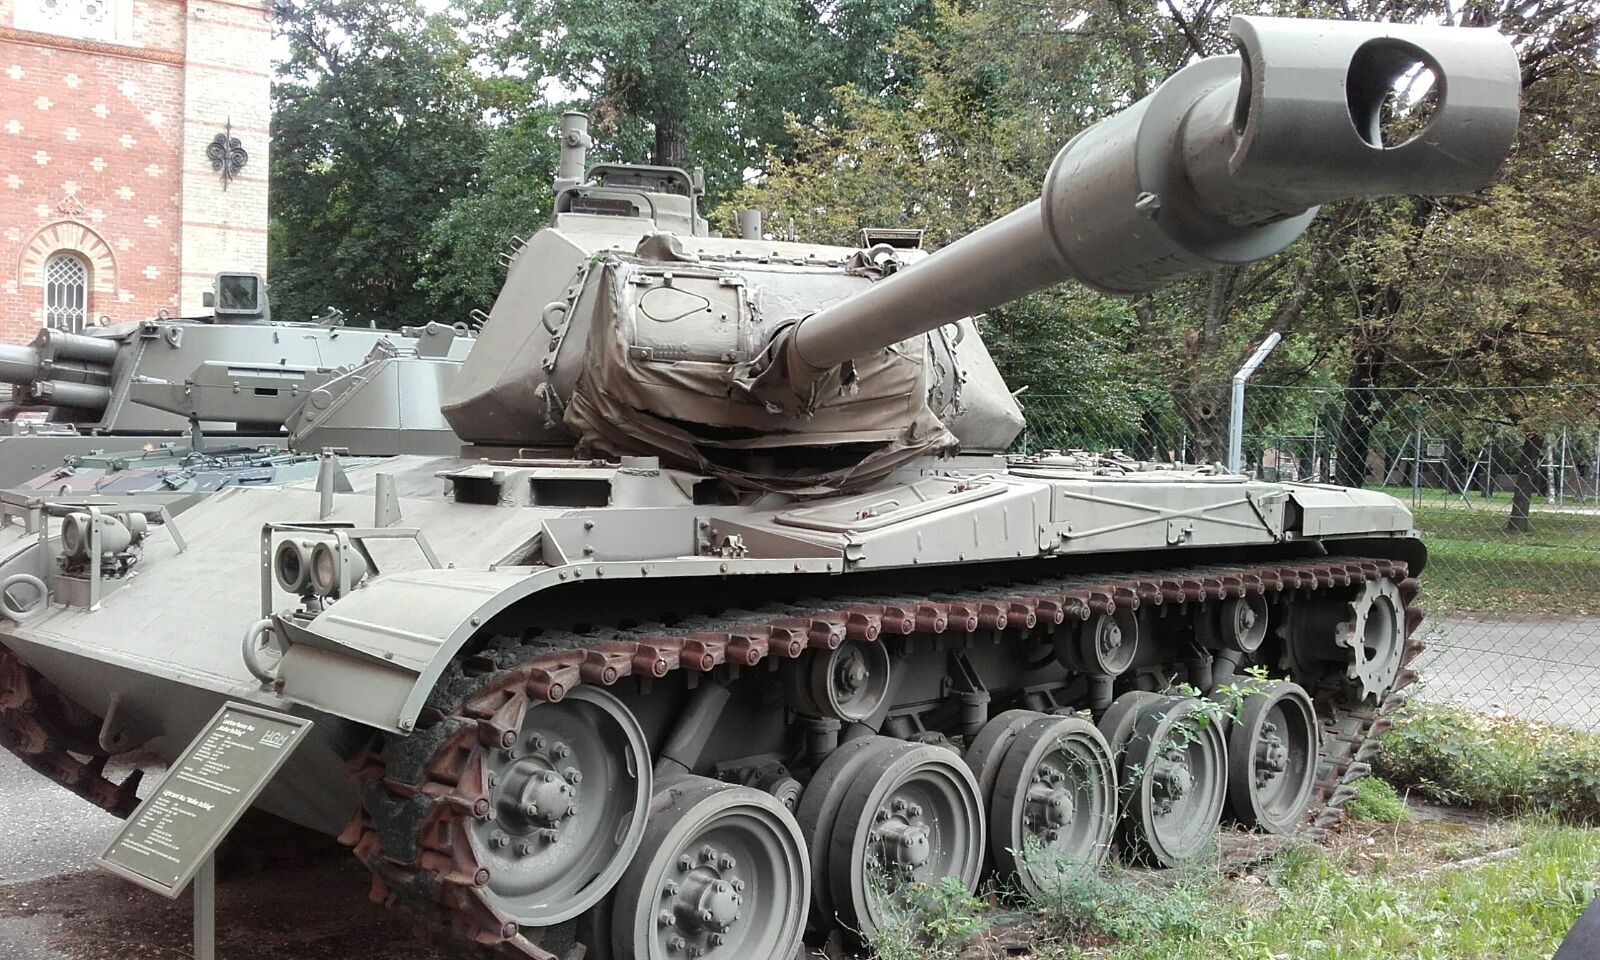 M41 light tank 76 mm gun.